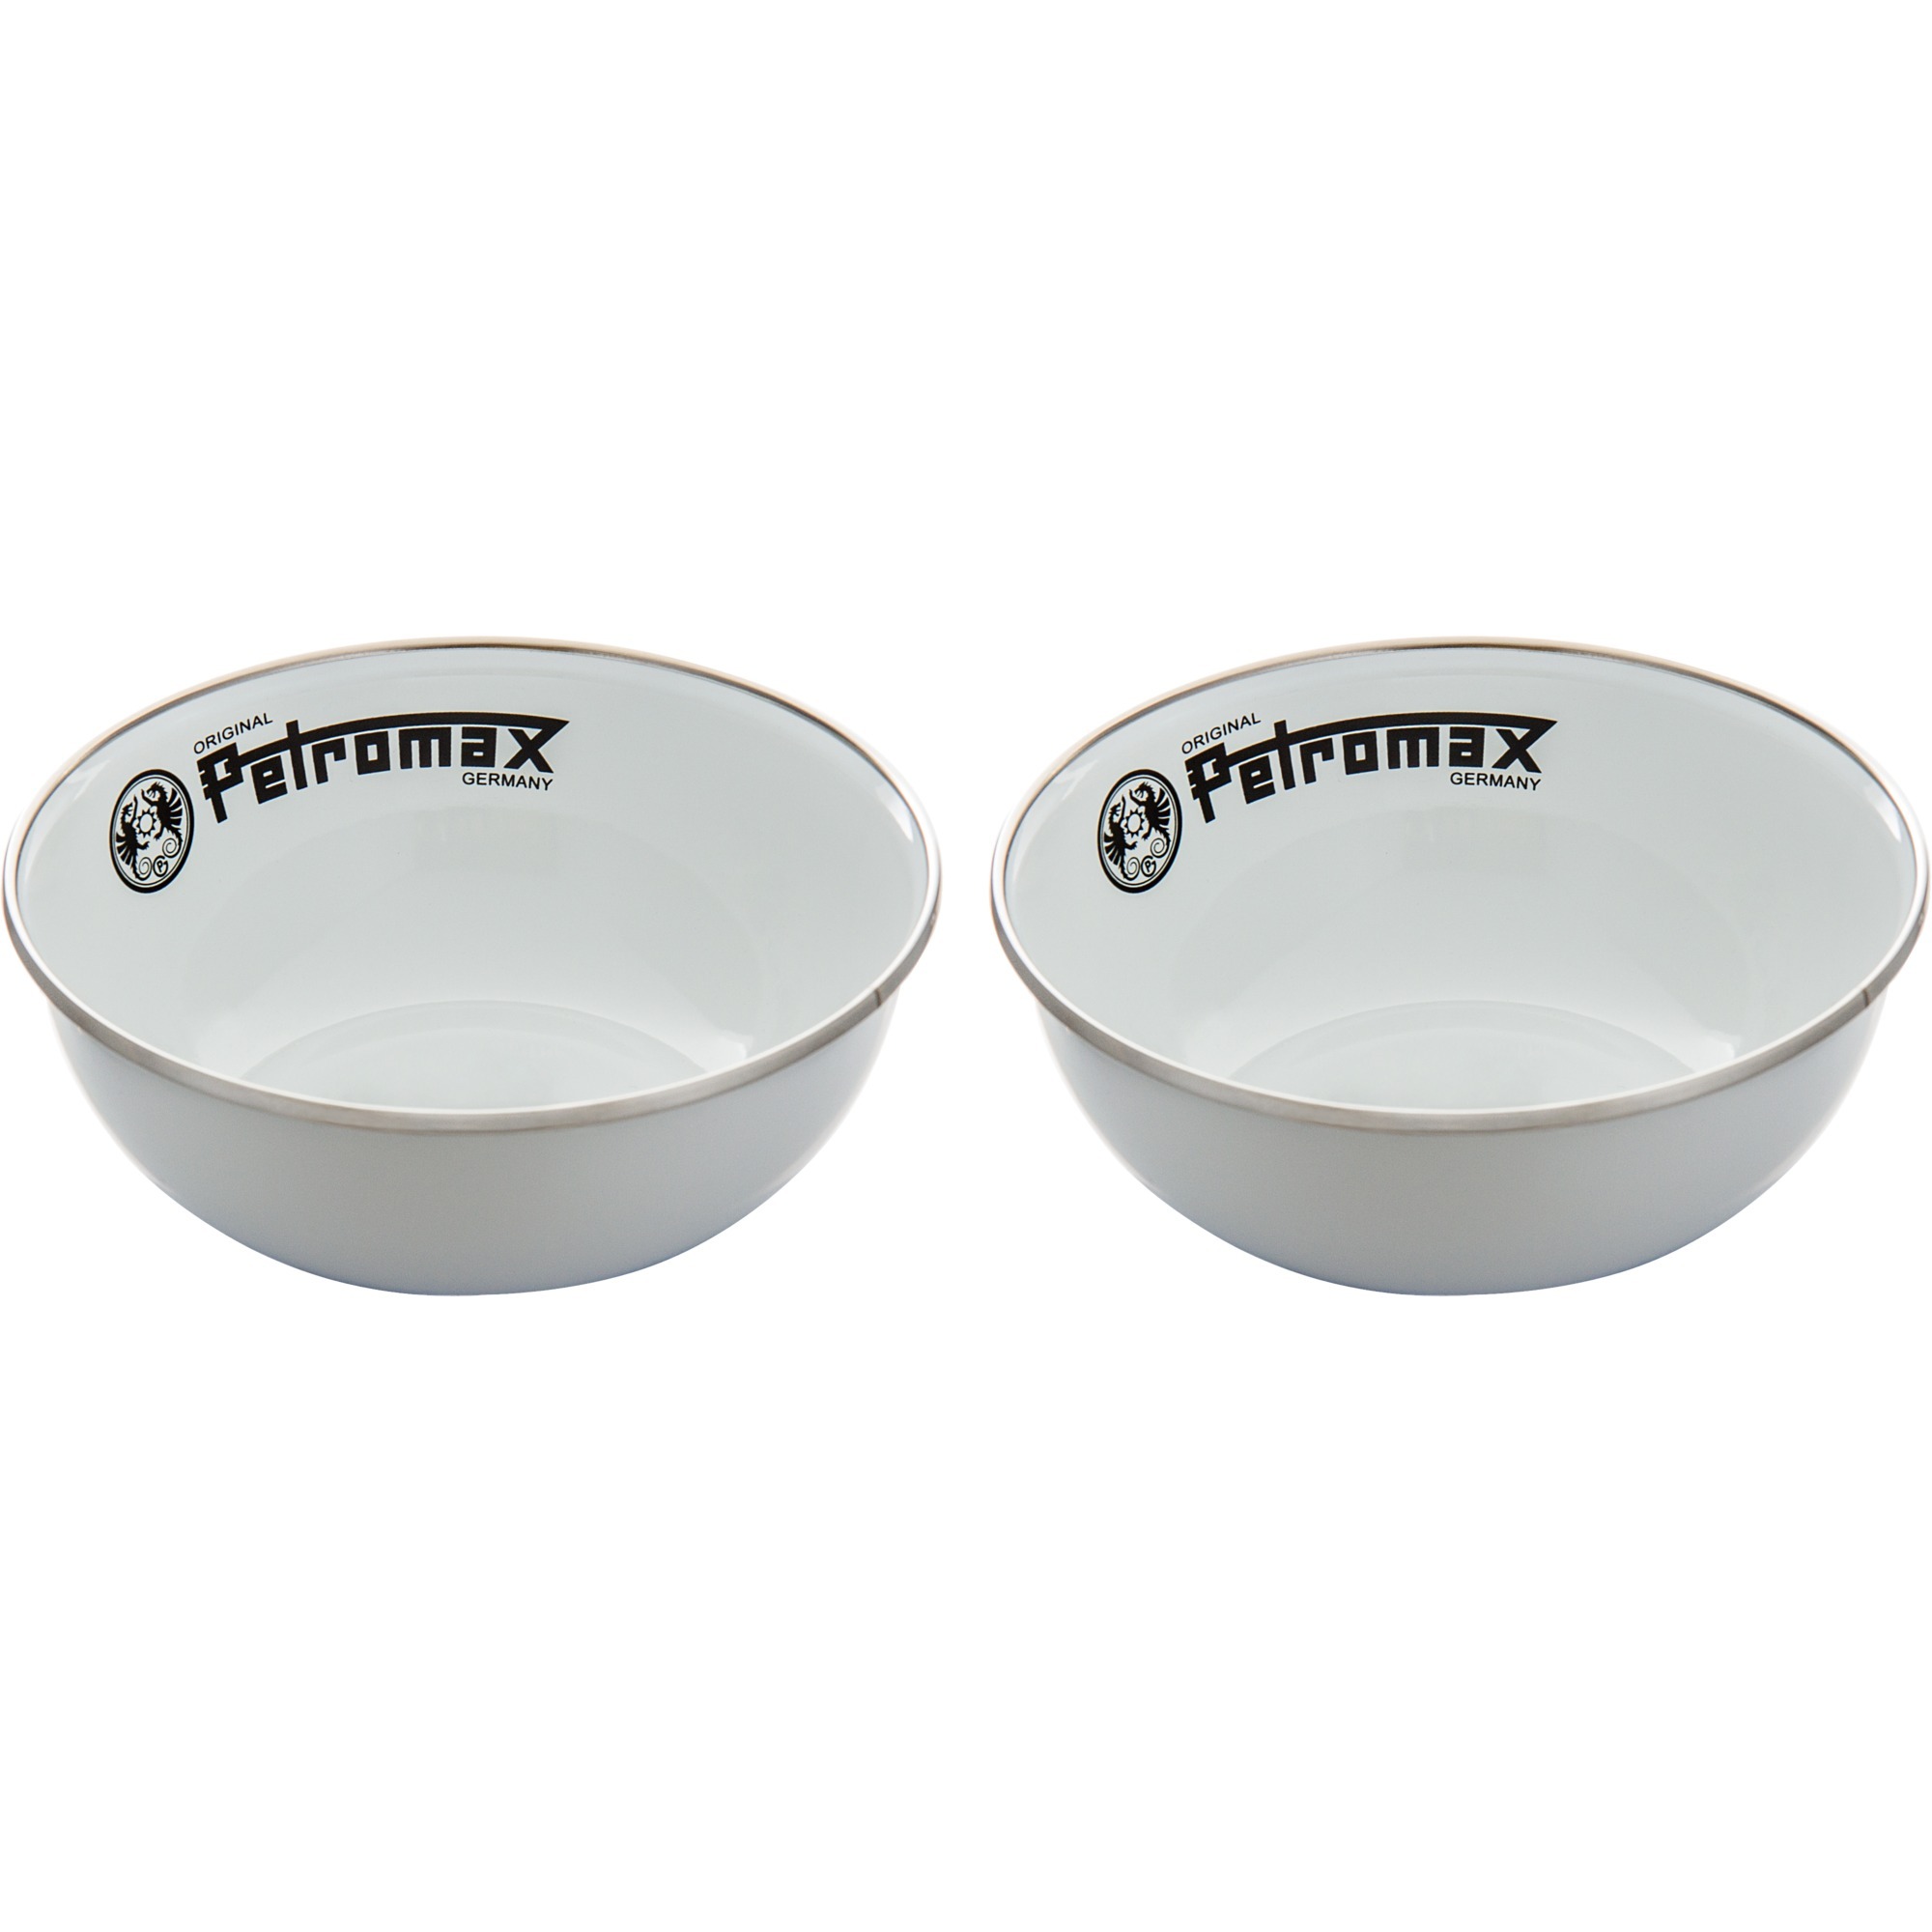 Image of Alternate - Emaille Schalen px-bowl-w, 2 Stück, Schüssel online einkaufen bei Alternate